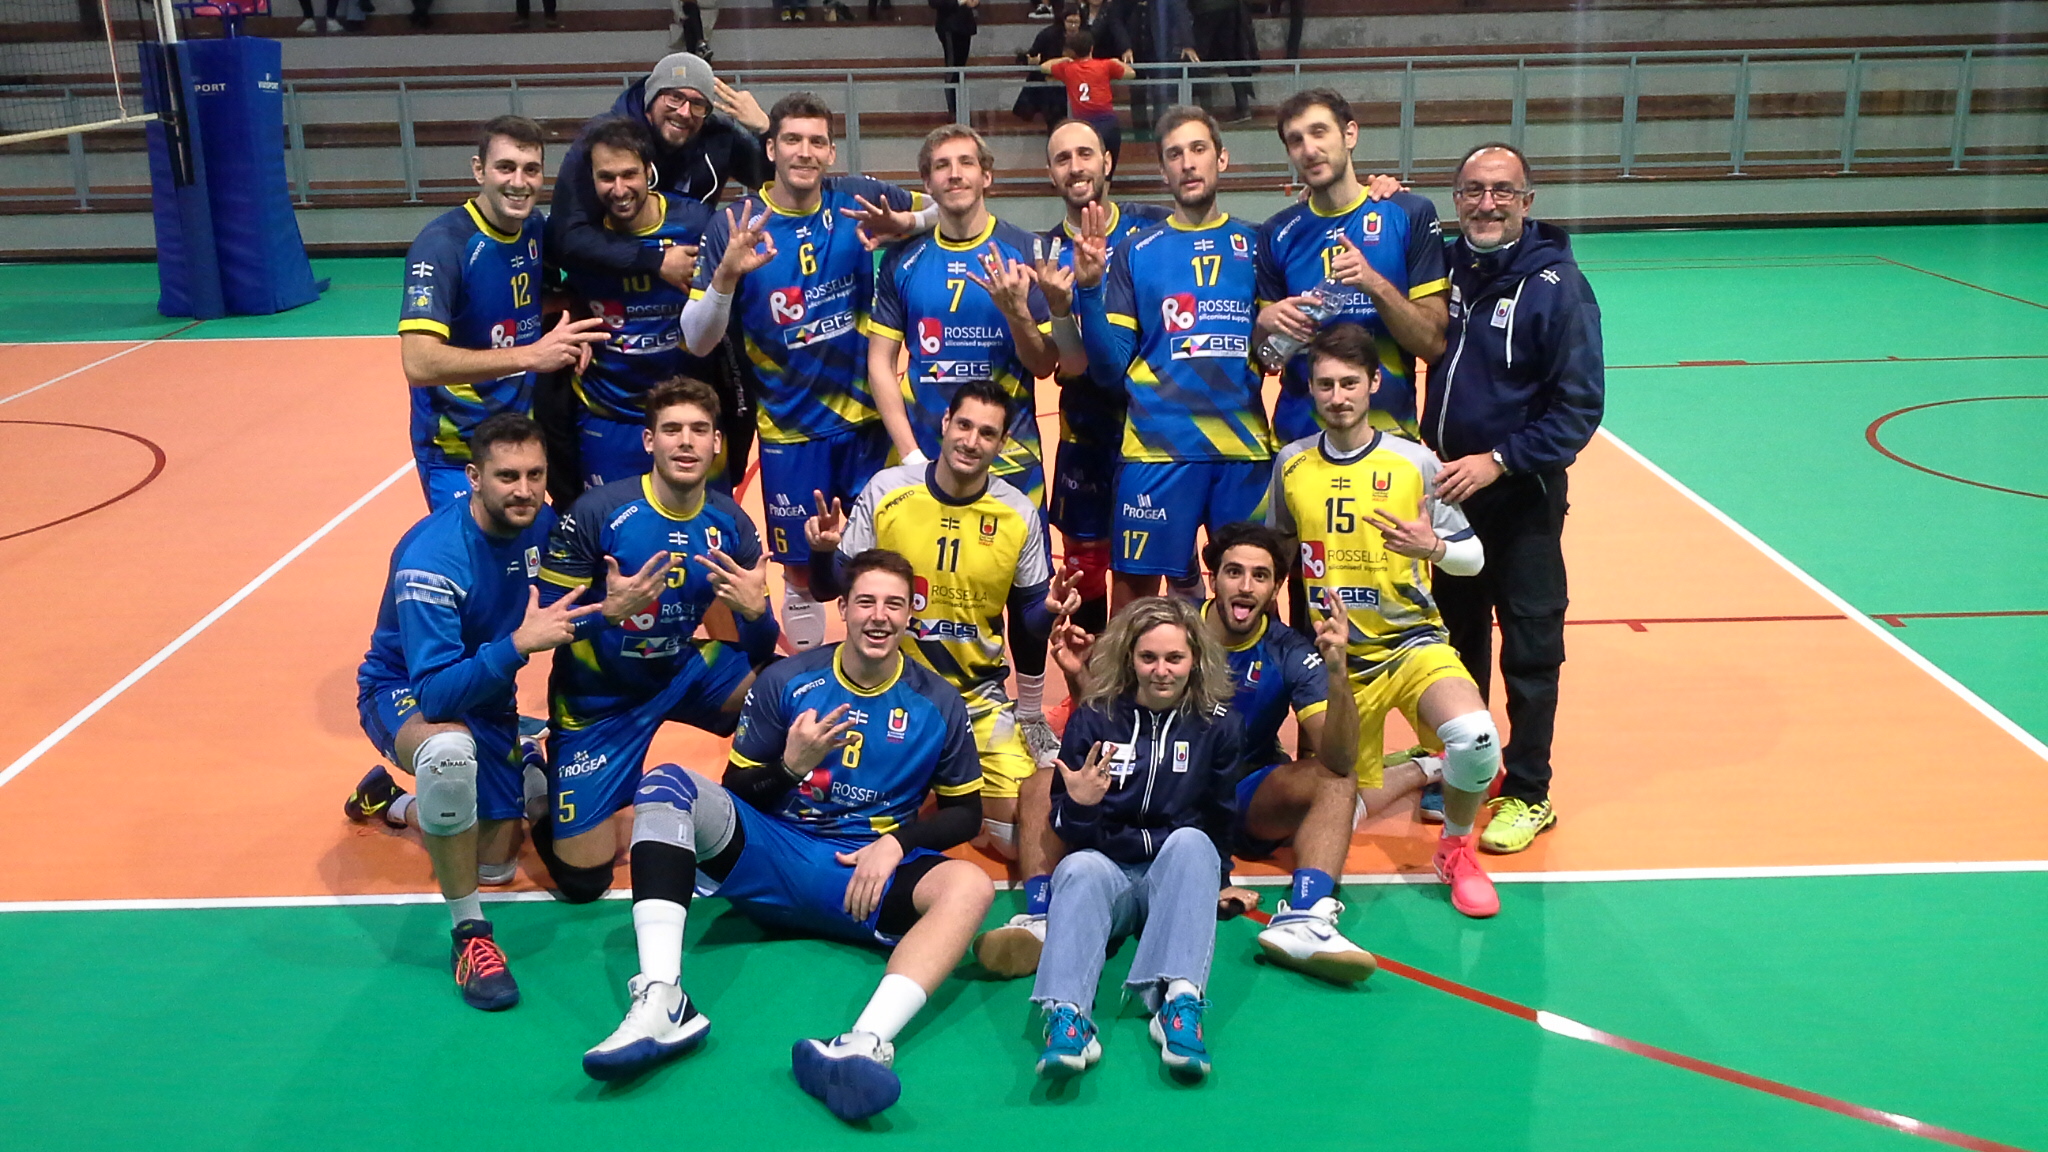 Volley, Serie B: 33 punti di Schintu regalano la vittoria a Caronno Pertusella